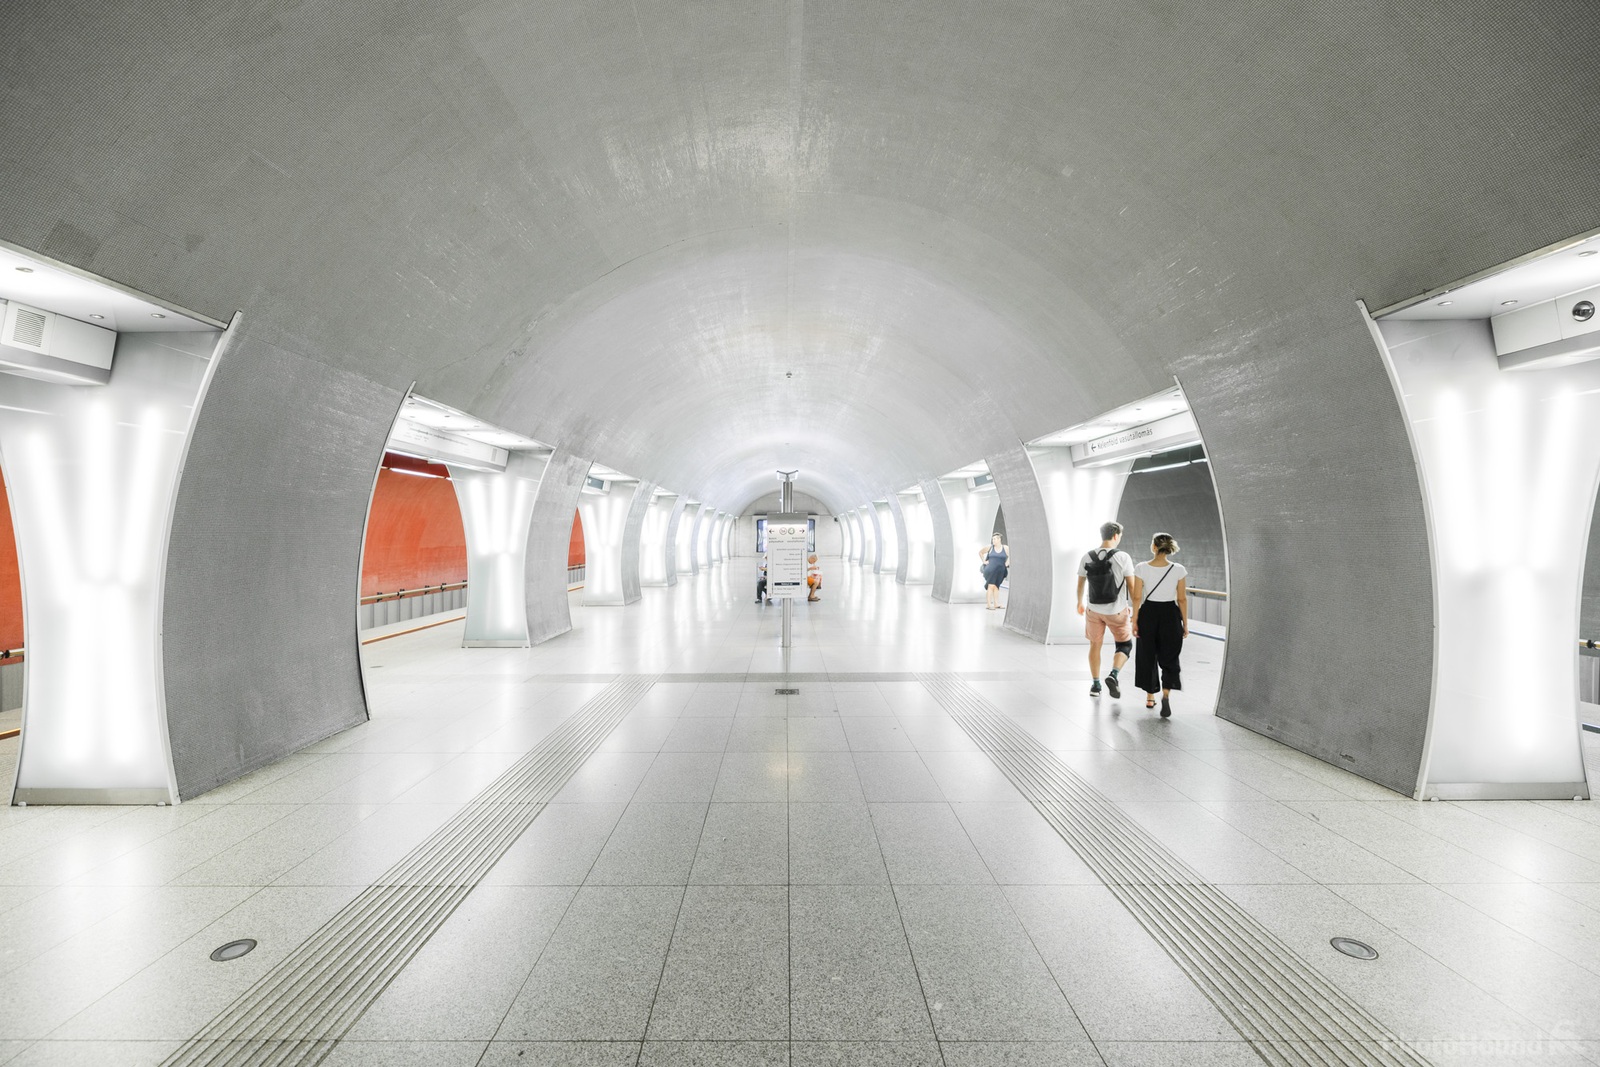 Image of Rákóczi Tér Metro Station by Jaka Ivančič